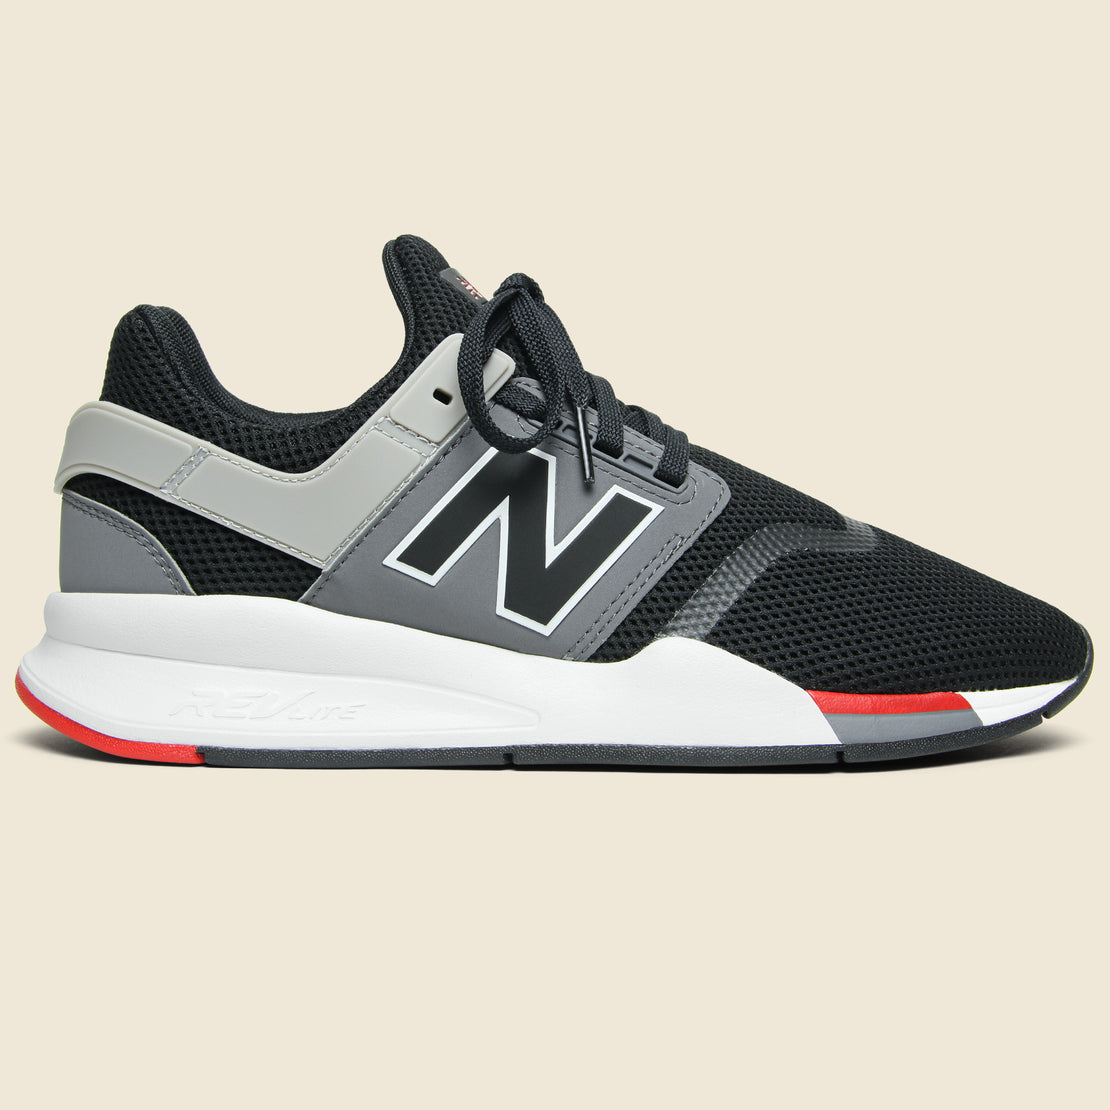 New Balance 247 V2 Sneaker - Black